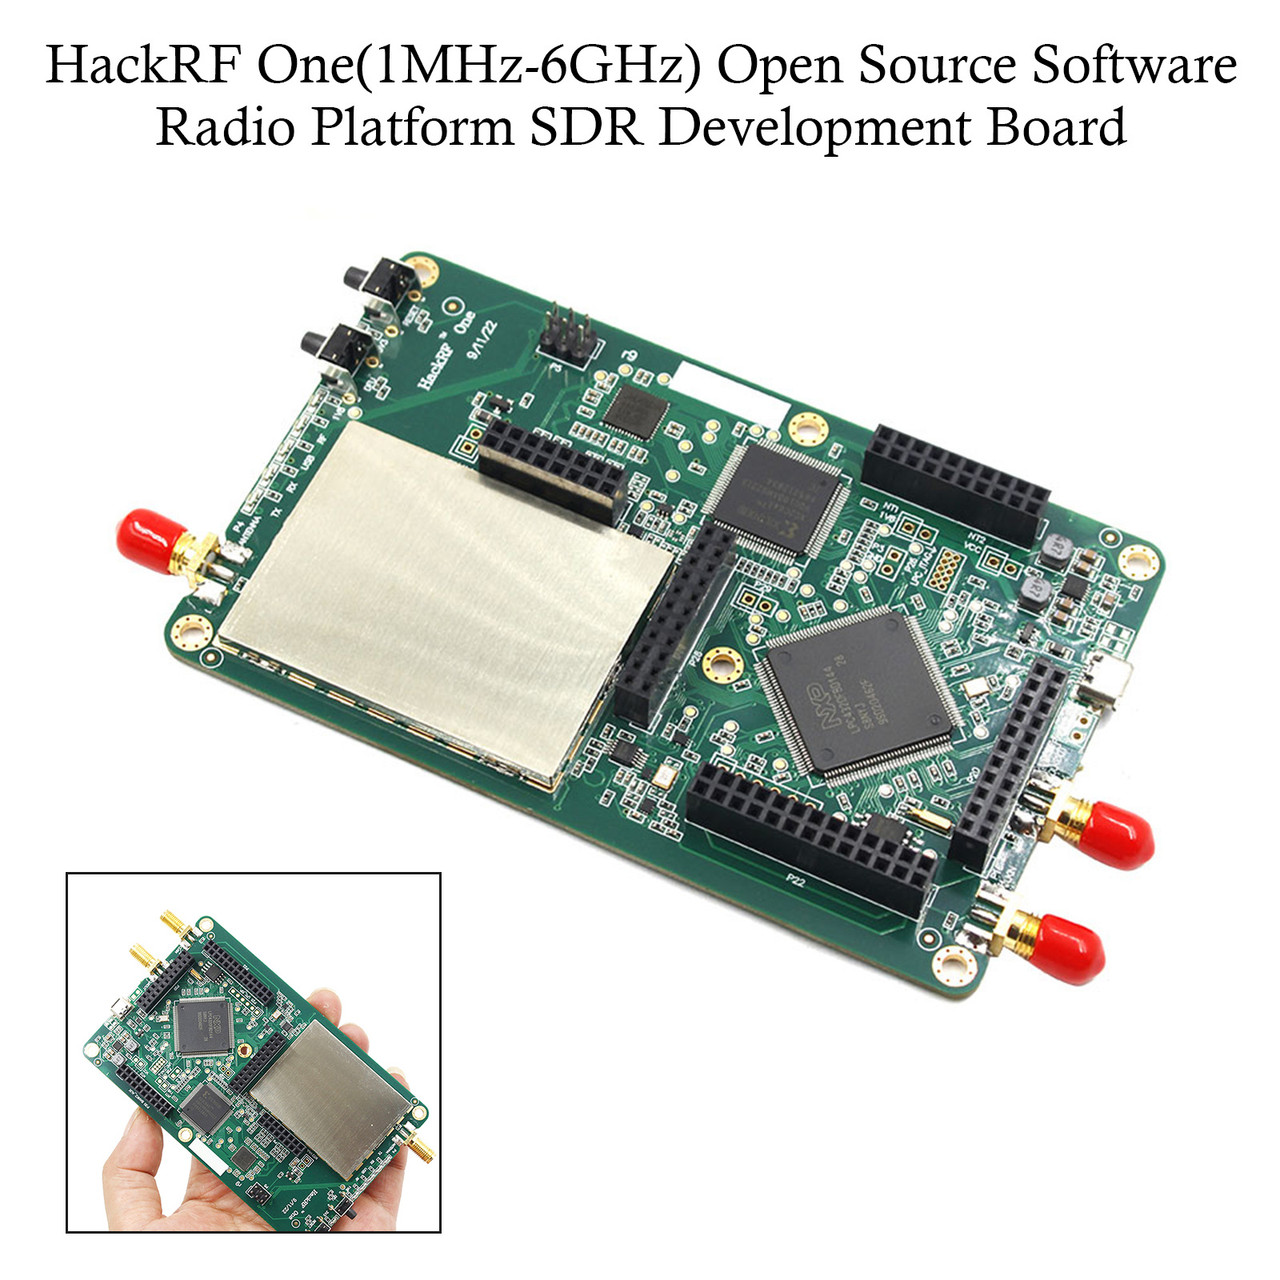 HackRF One 1MHz-6GHz Open Source Software Radio Platform SDR Development Board